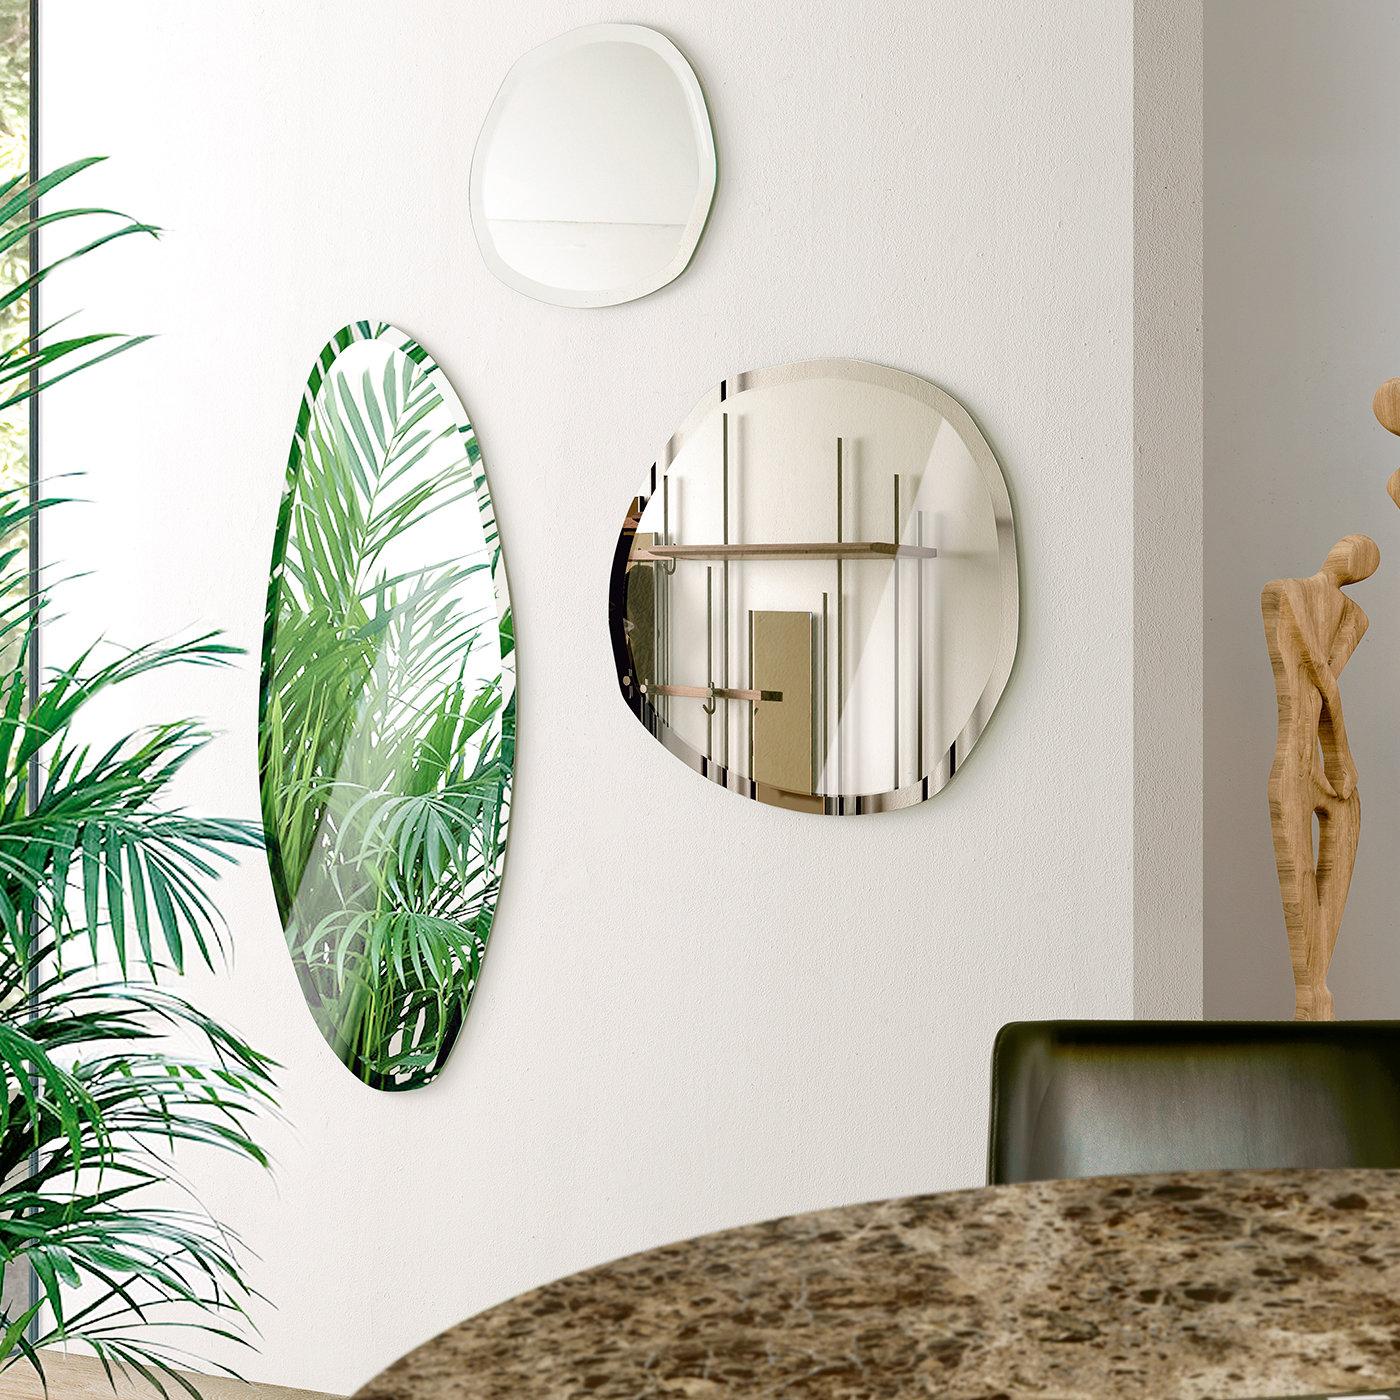 Dieser auffällige Wandspiegel von Norberto Delfinetti, der an den Reiz von Naturstein erinnert, ist mit Sicherheit ein einzigartiges, funktionelles Dekorationsobjekt, das in jeder raffinierten, modernen Einrichtung auffällt. Das Glas ist sowohl in